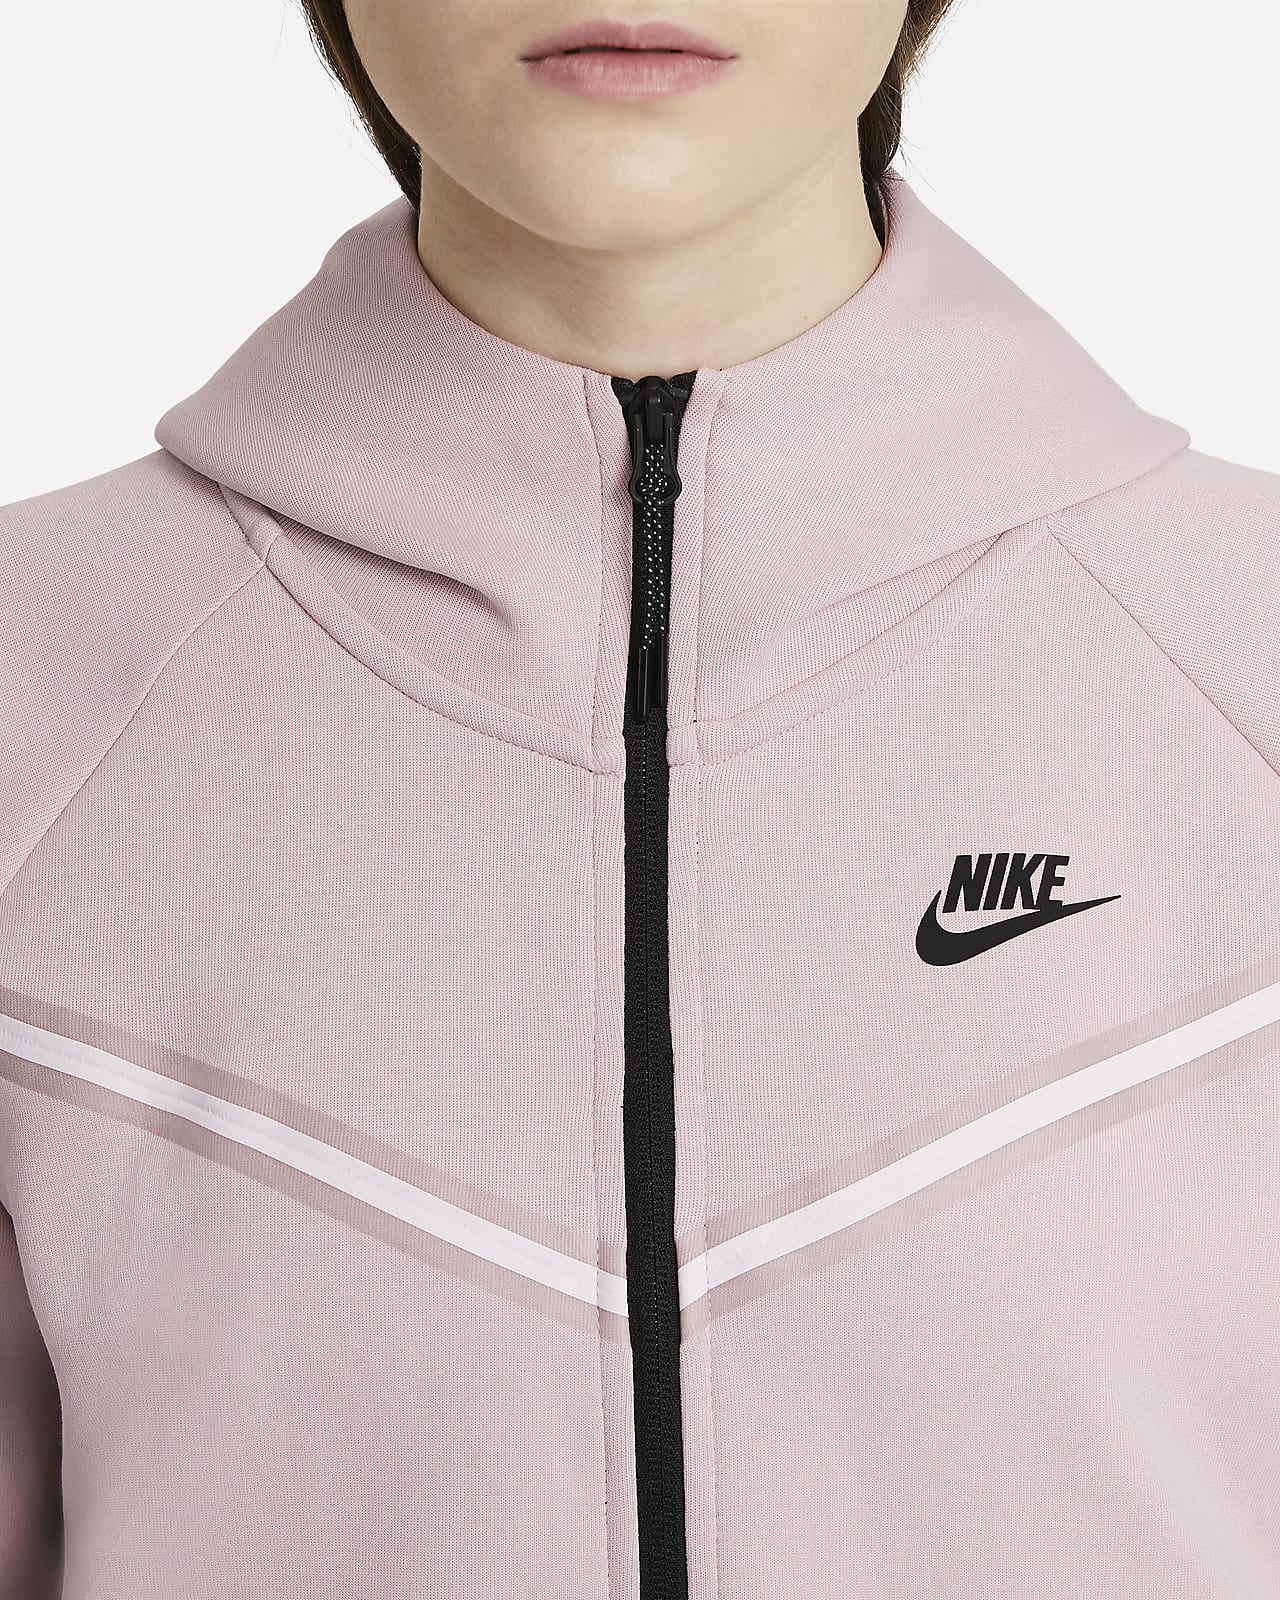 Nike公式 ナイキ スポーツウェア テック フリース ウィンドランナー ウィメンズ フルジップ パーカー オンラインストア 通販サイト